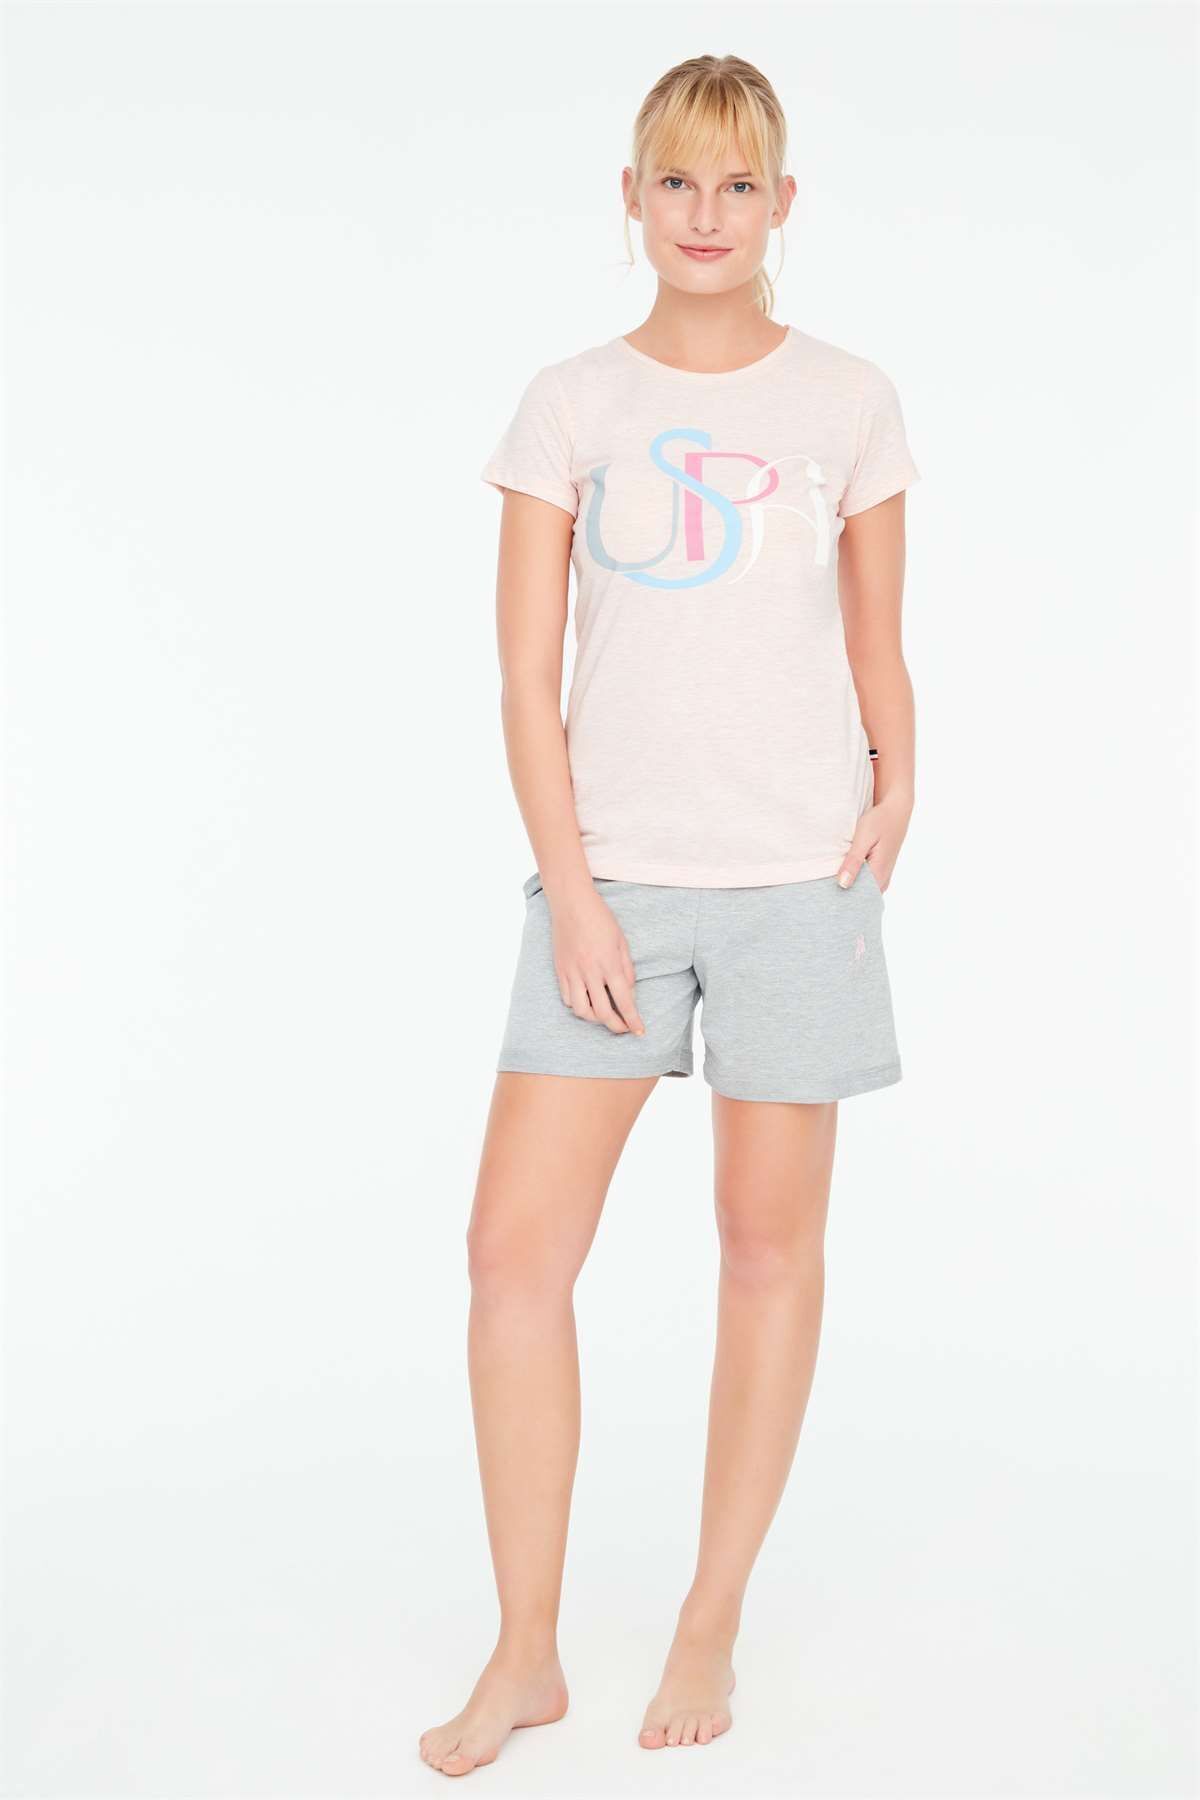 U.S. Polo Assn. - Kadın Pembe Melanj T-shirt Şort Takımı